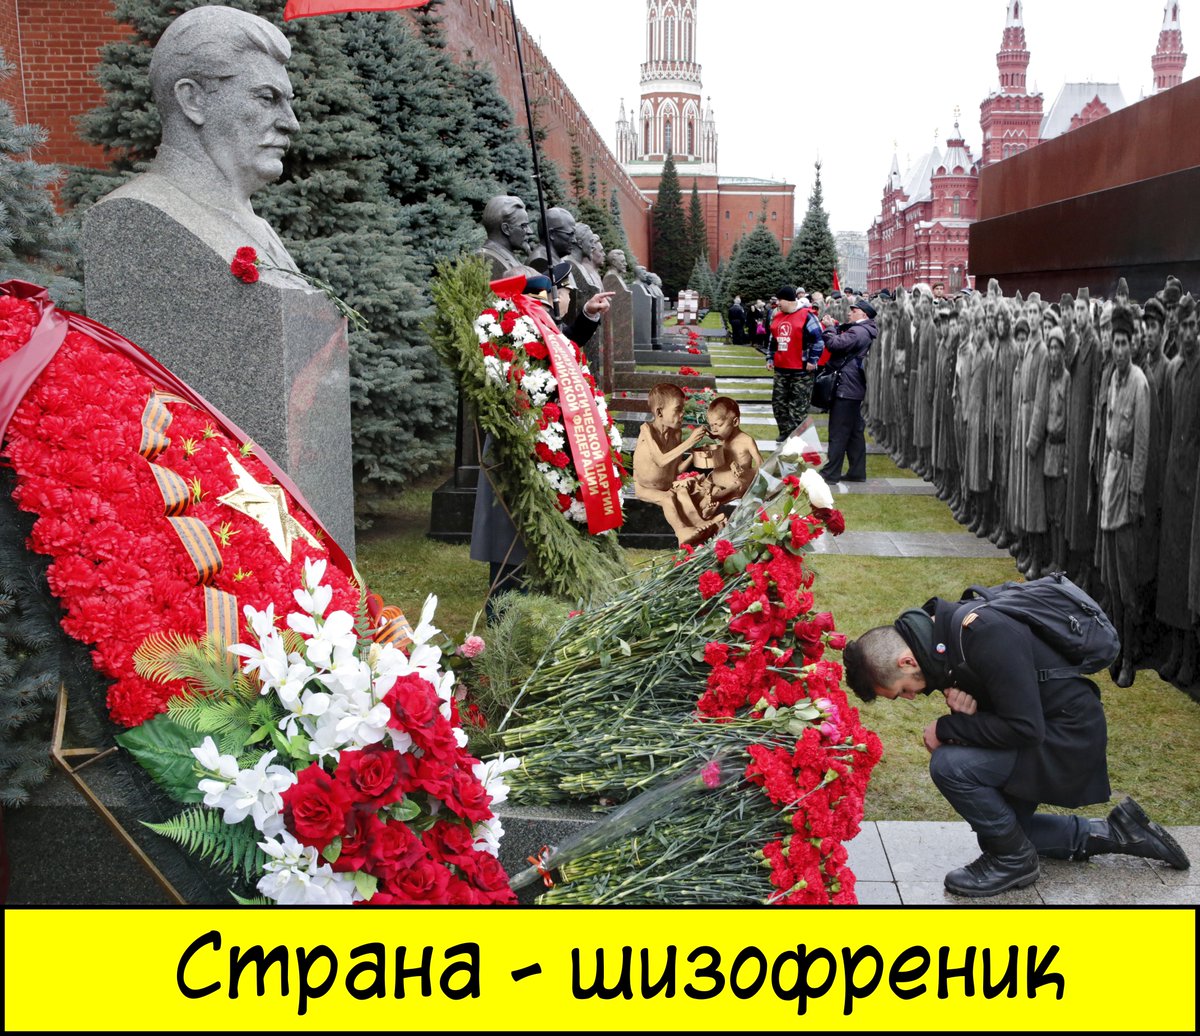 Из всех пролетариев самая гнусная мразь. Могила Сталина. Могила Сталина в цветах. Могила Сталина у кремлевской стены в цветах. На коленях перед могилой Сталина.